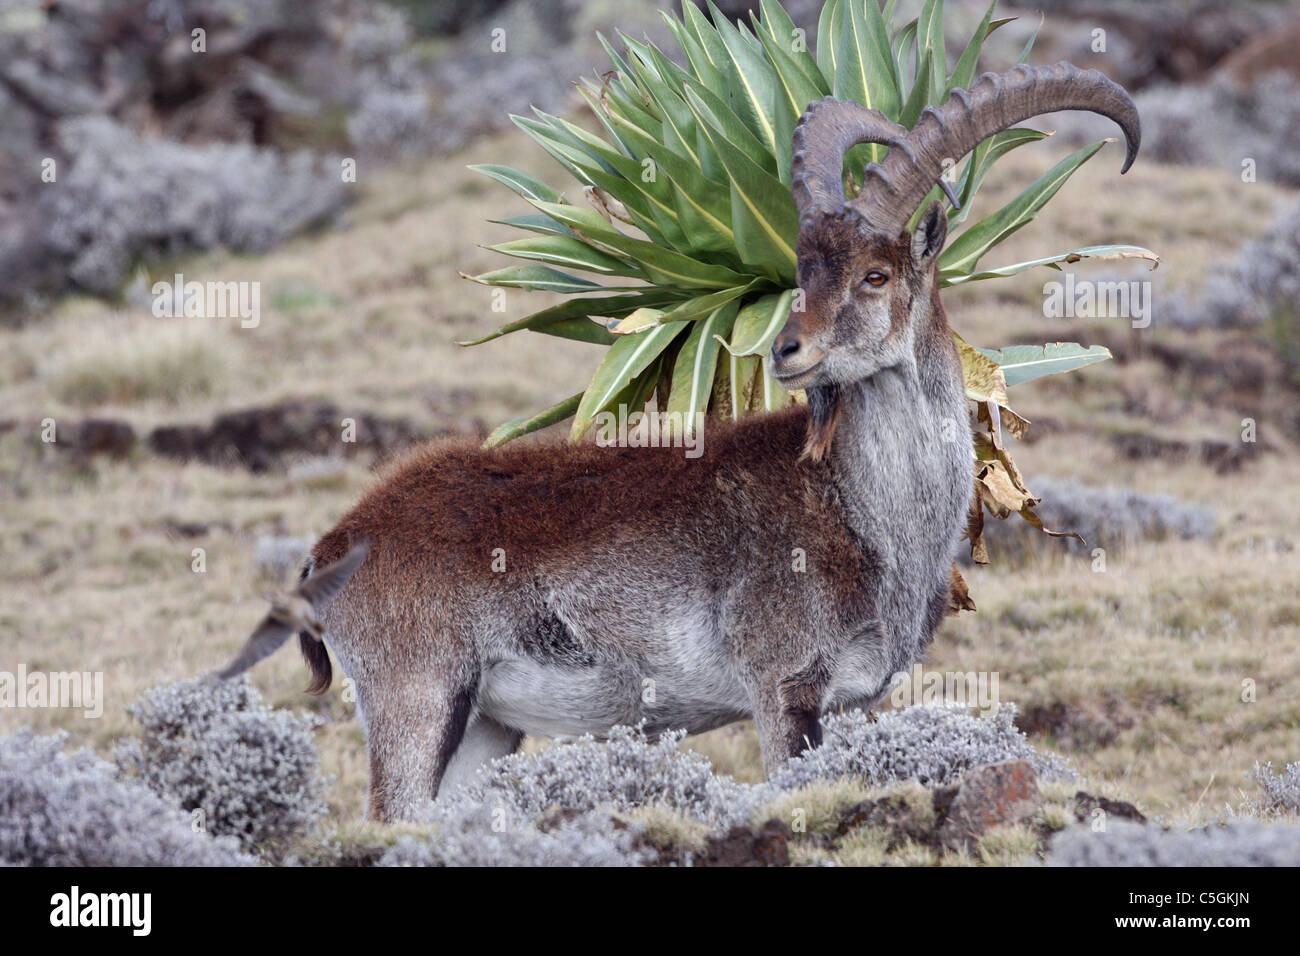 Walia ibex, Capra walie, critically endangered mountain goat, Semien Mountains Ethiopia Stock Photo